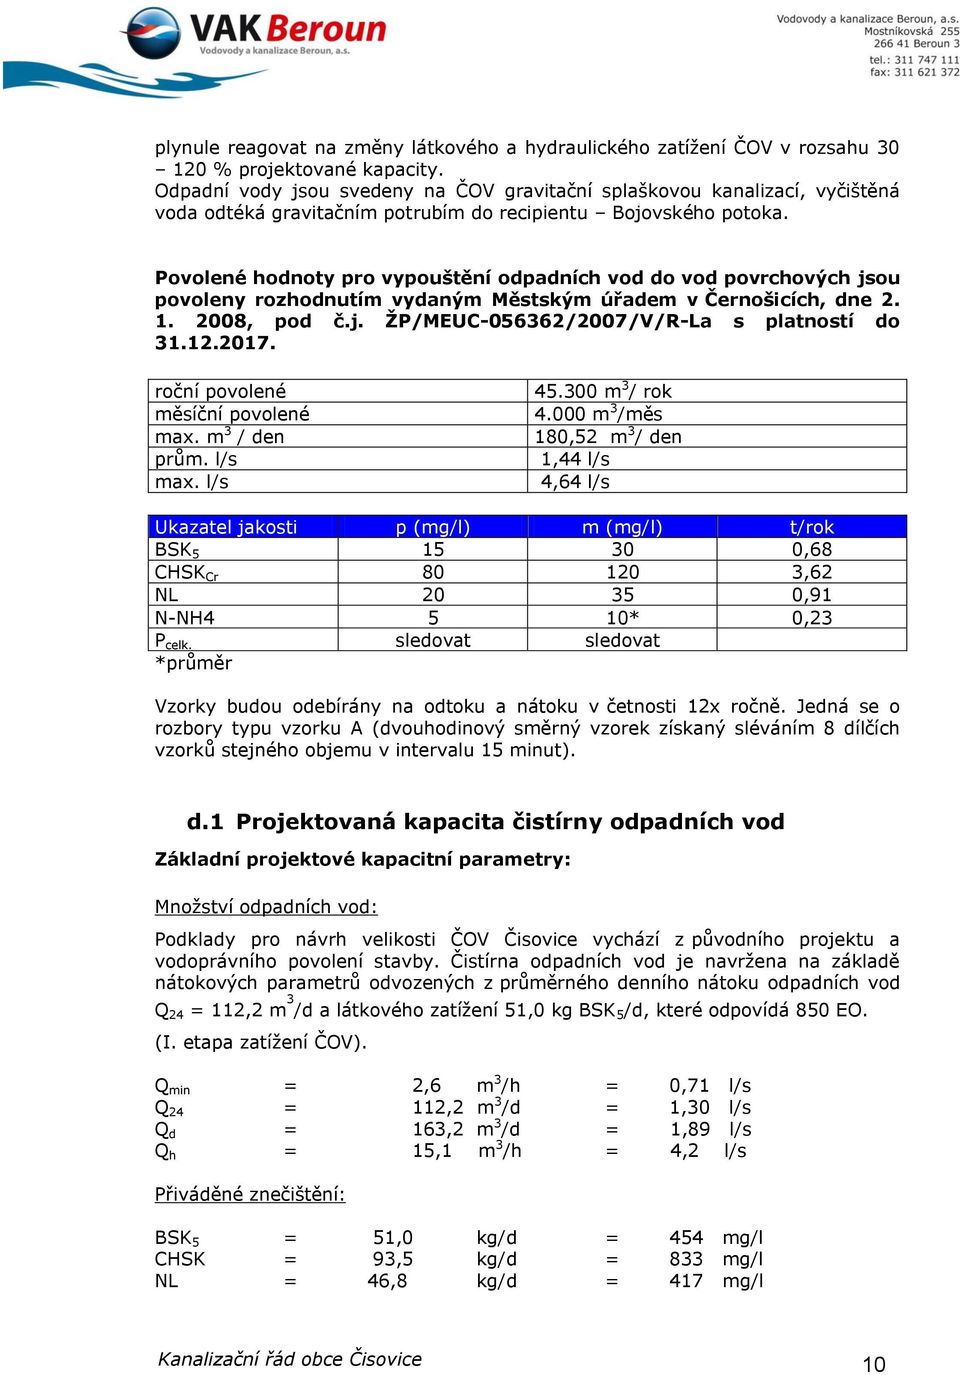 Povolené hodnoty pro vypouštění odpadních vod do vod povrchových jsou povoleny rozhodnutím vydaným Městským úřadem v Černošicích, dne 2. 1. 2008, pod č.j. ŽP/MEUC-056362/2007/V/R-La s platností do 31.